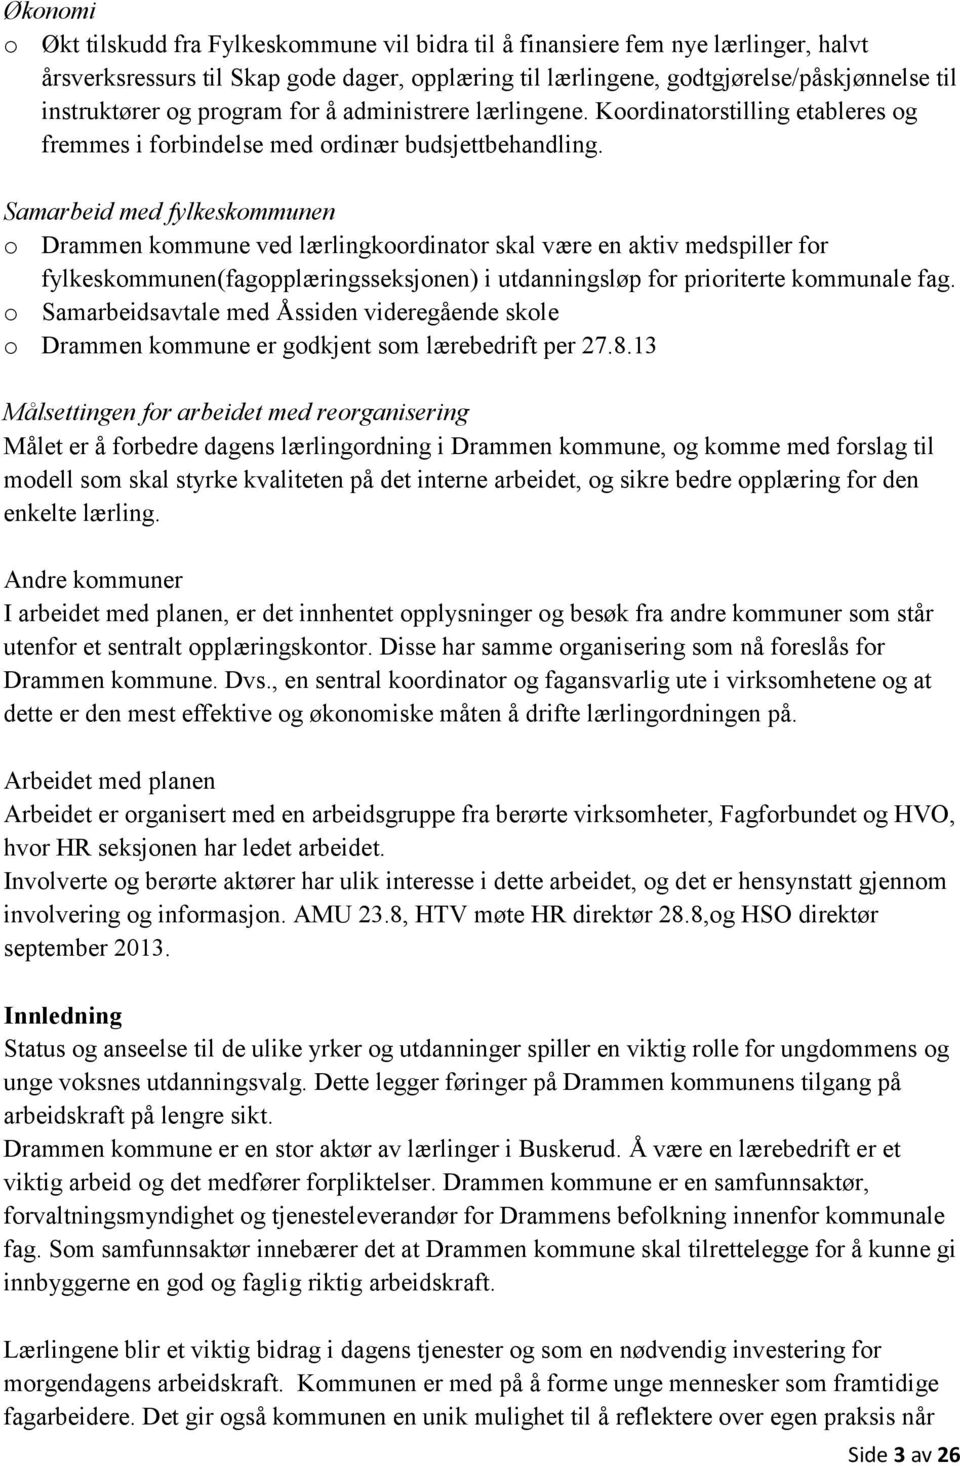 Samarbeid med fylkeskmmunen Drammen kmmune ved lærlingkrdinatr skal være en aktiv medspiller fr fylkeskmmunen(fagpplæringsseksjnen) i utdanningsløp fr pririterte kmmunale fag.